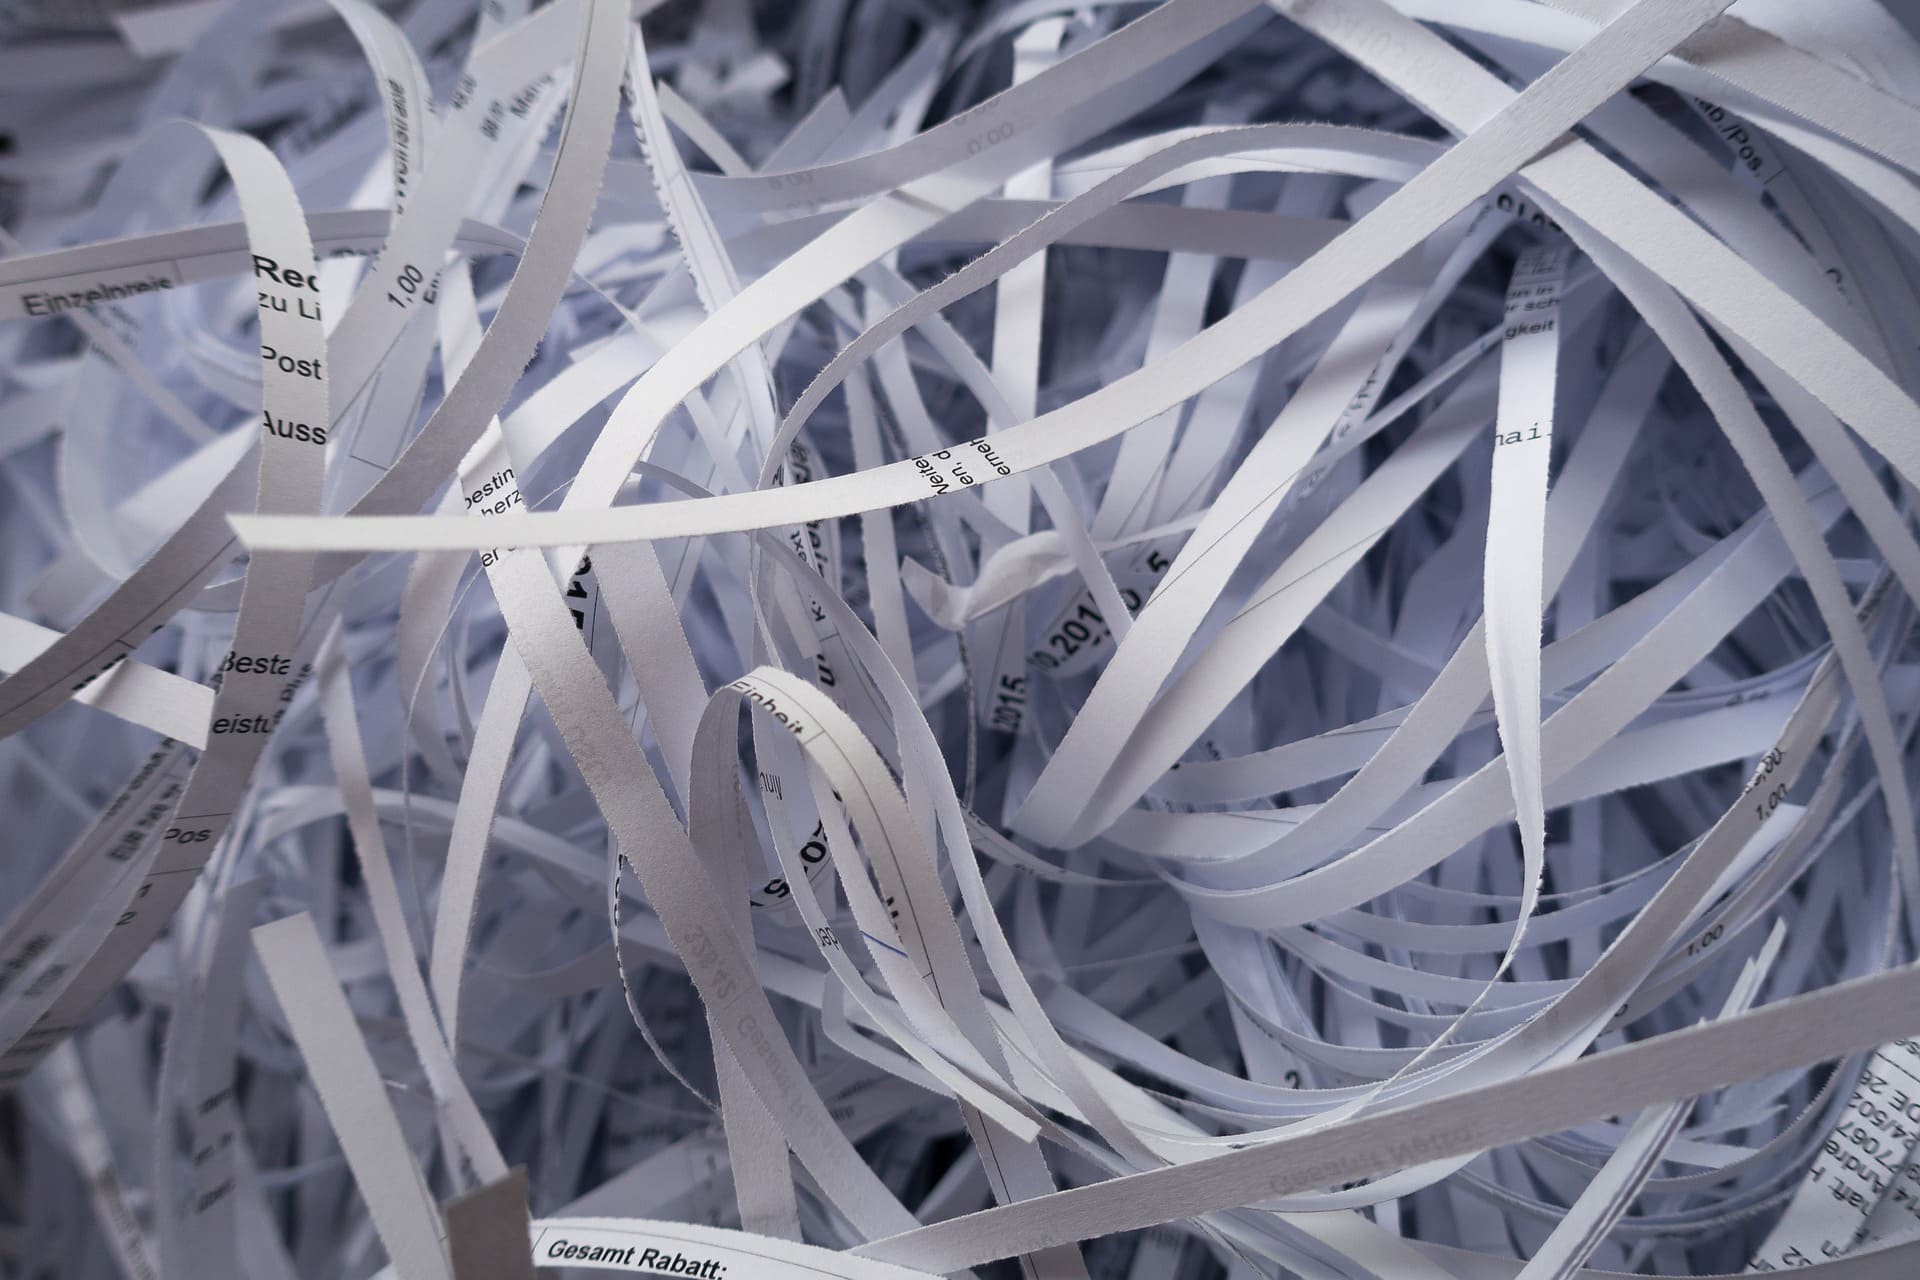 papier-recyclage-tri-document-détruit